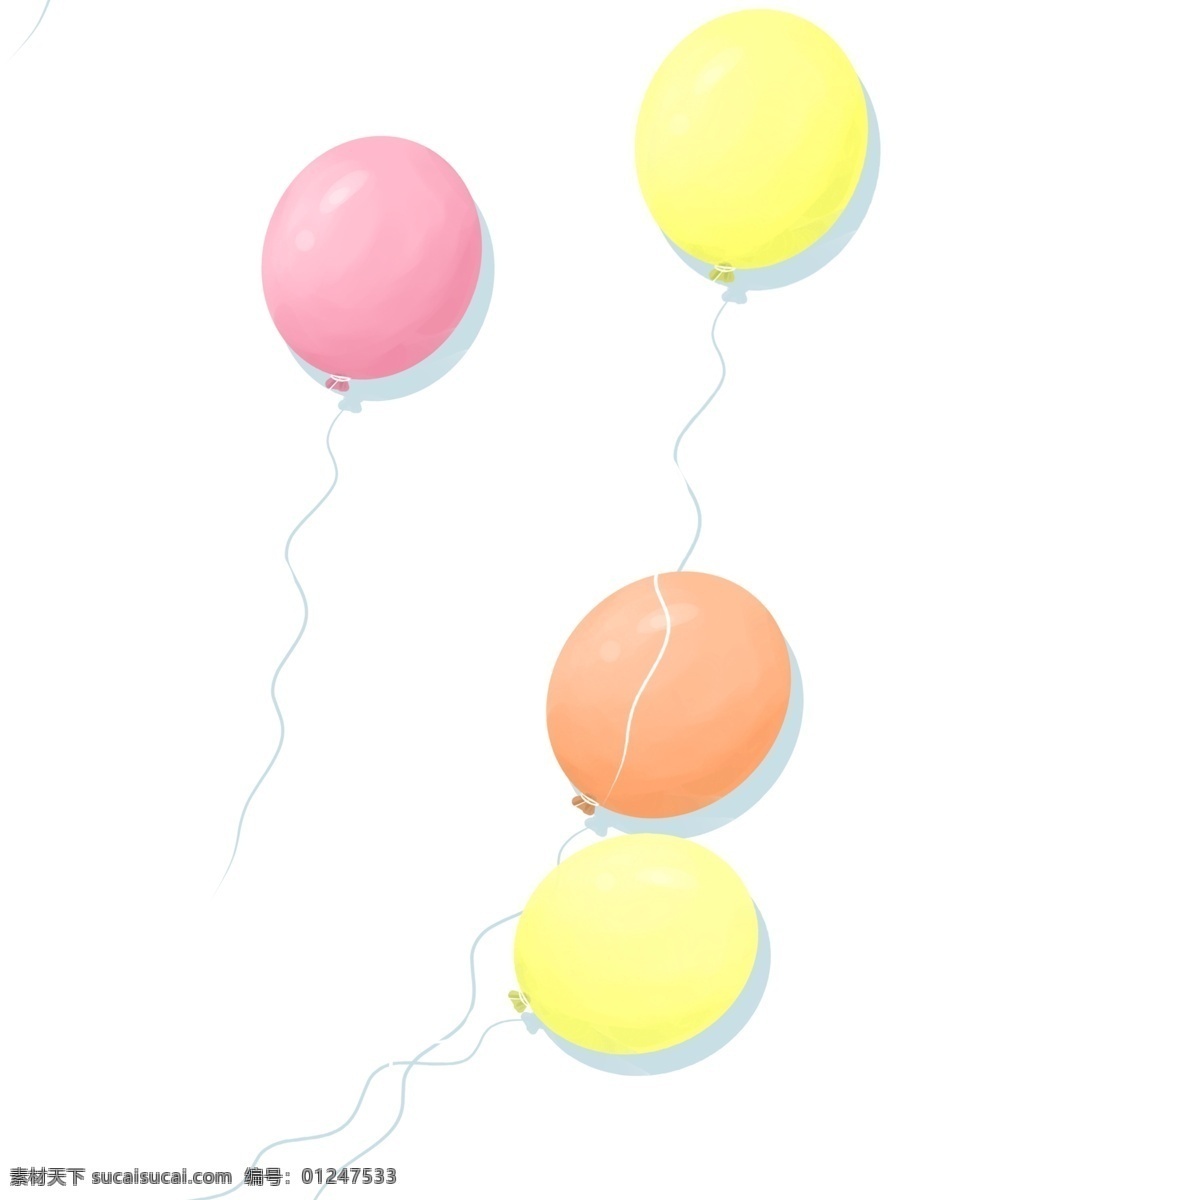 节日 喜庆 气球 卡通 透明 节日元素 手绘素材 可爱 喜庆气球